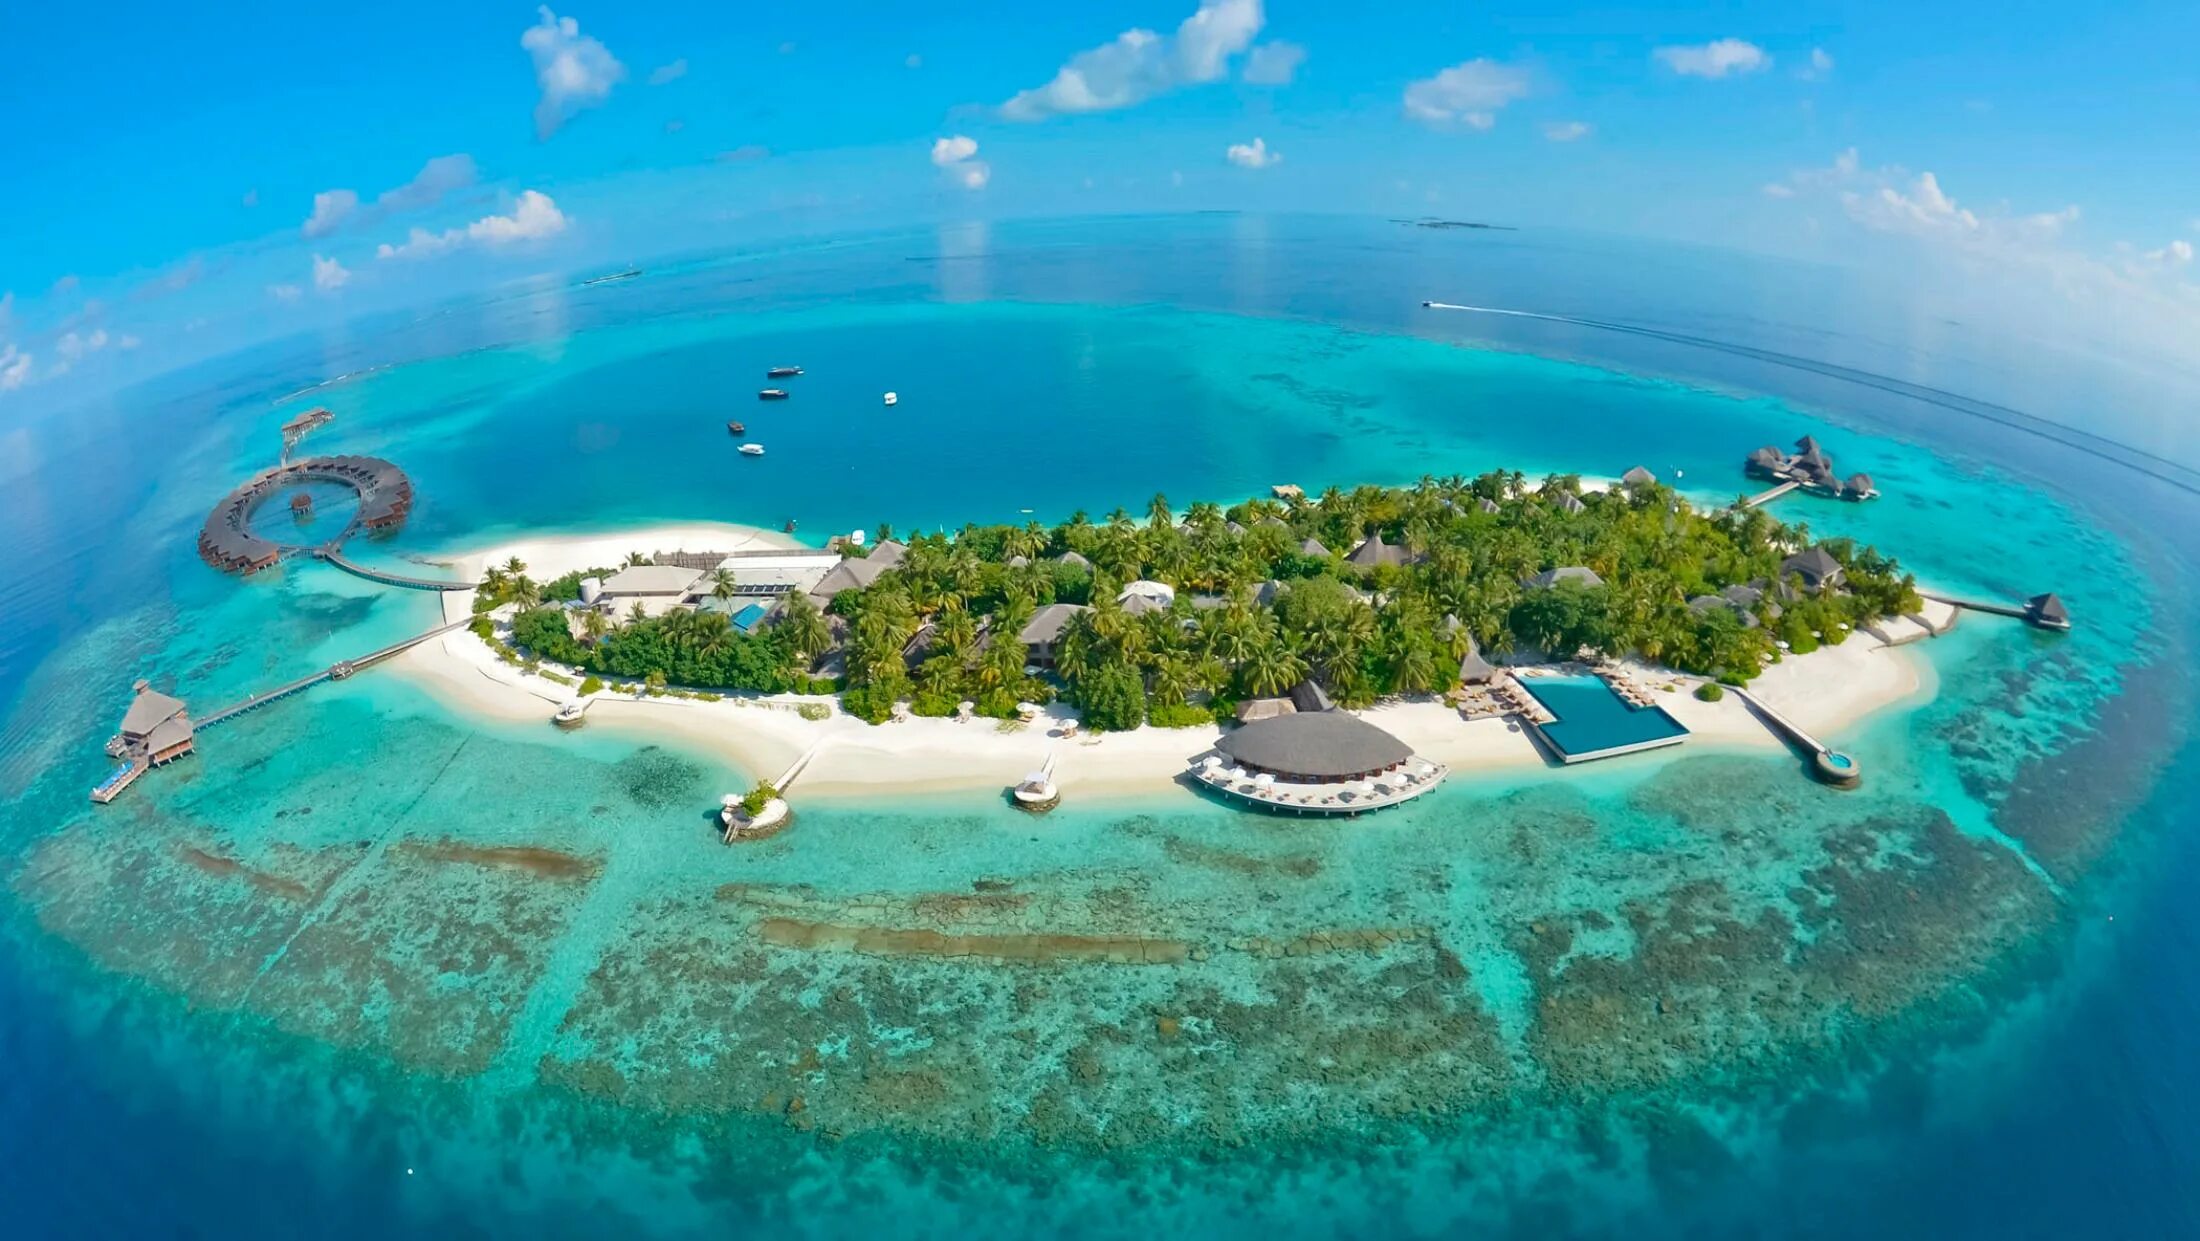 Атолл Адду Мальдивы. Хувафен Фуши Мальдивы. Парадайз Айленд риф Мальдивы. Остров Дигура Мальдивы. O island